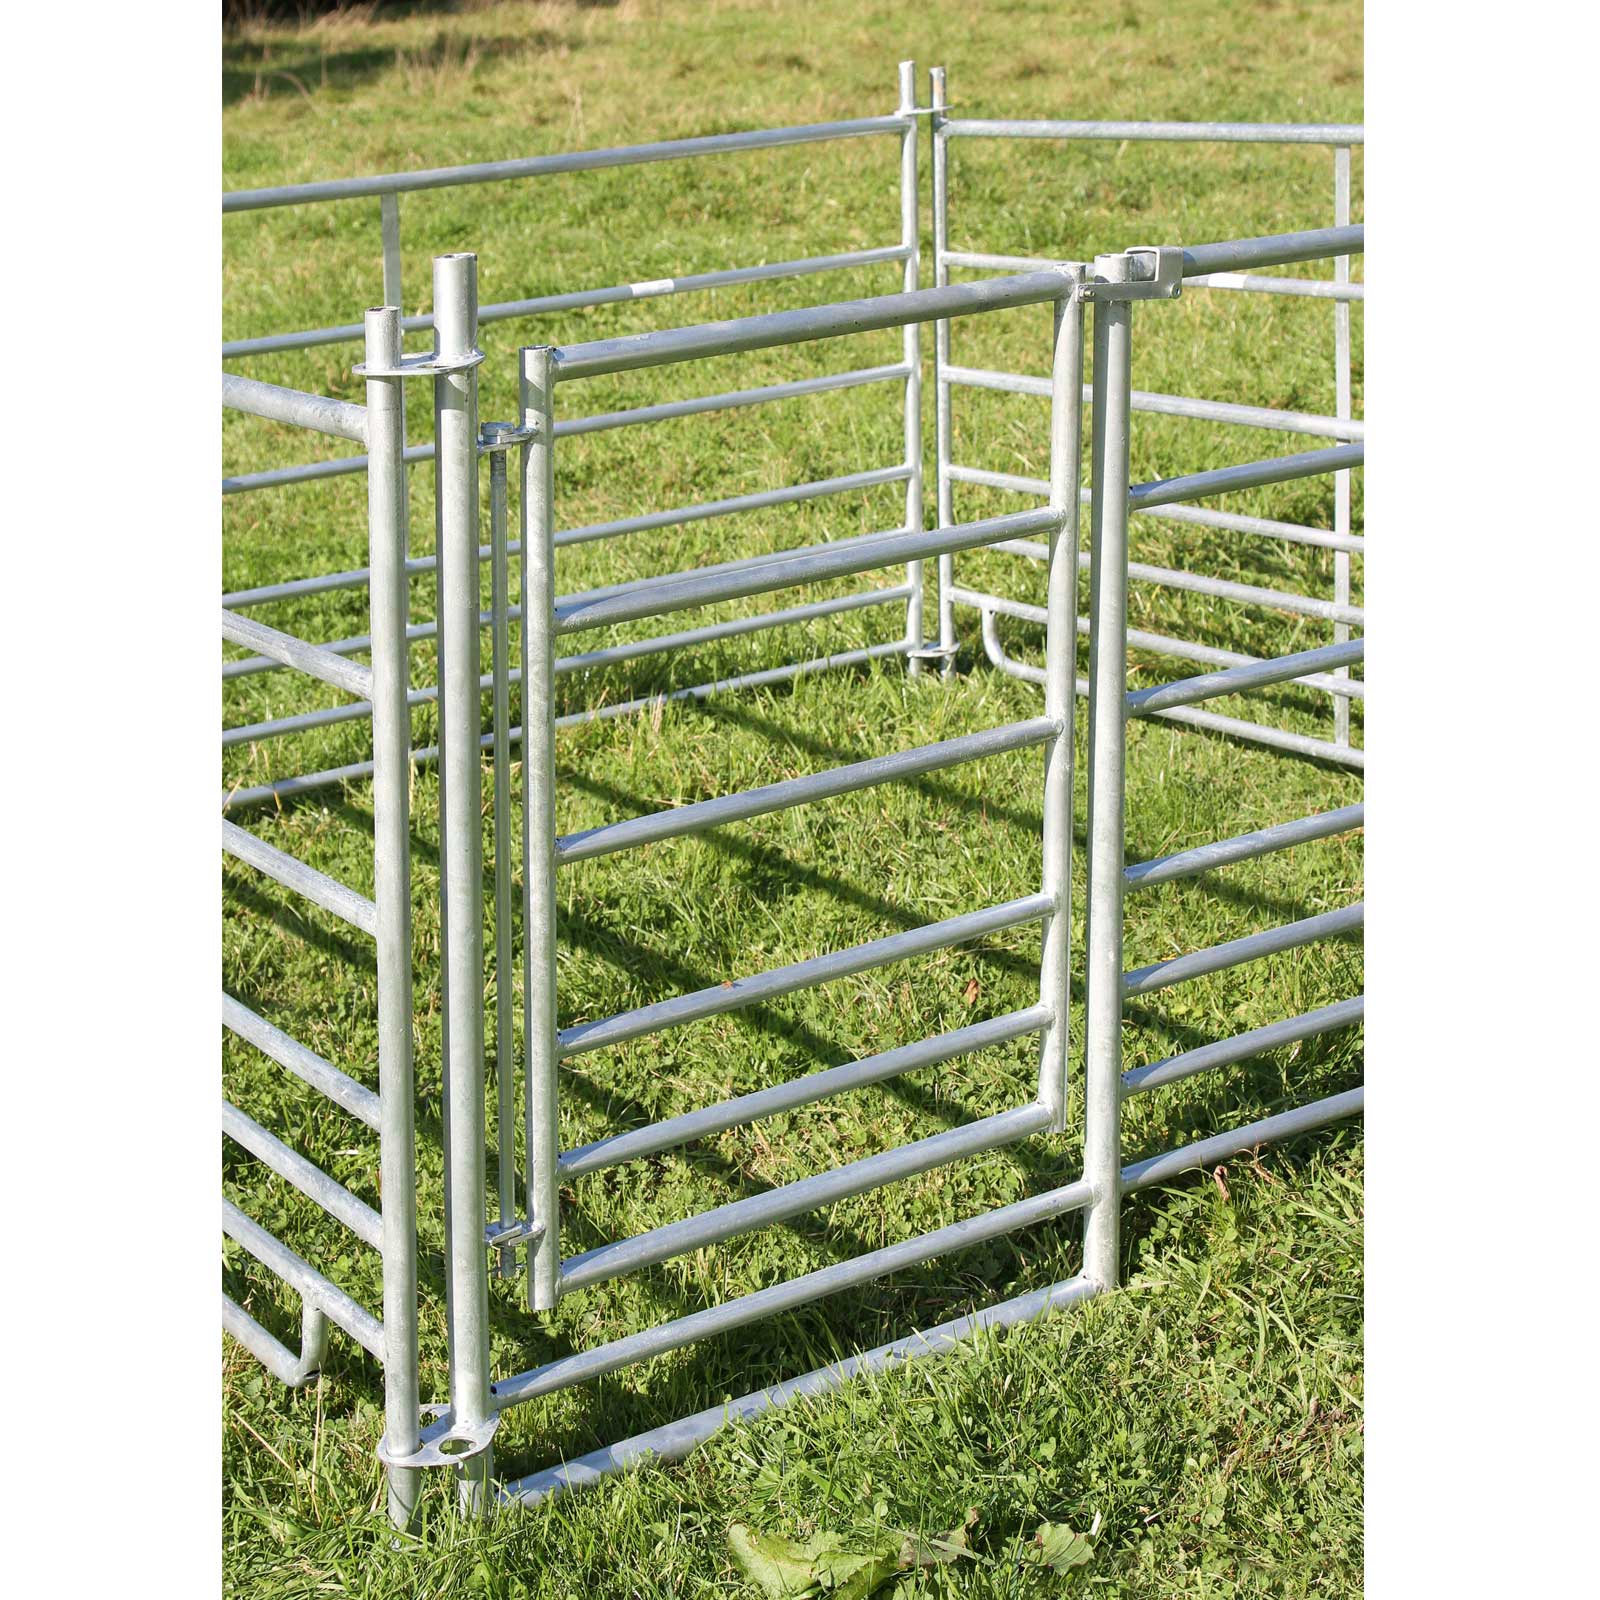 Steckfixhorde für Schafe Schafhorde verzinkt 1,37 x 0,92 m